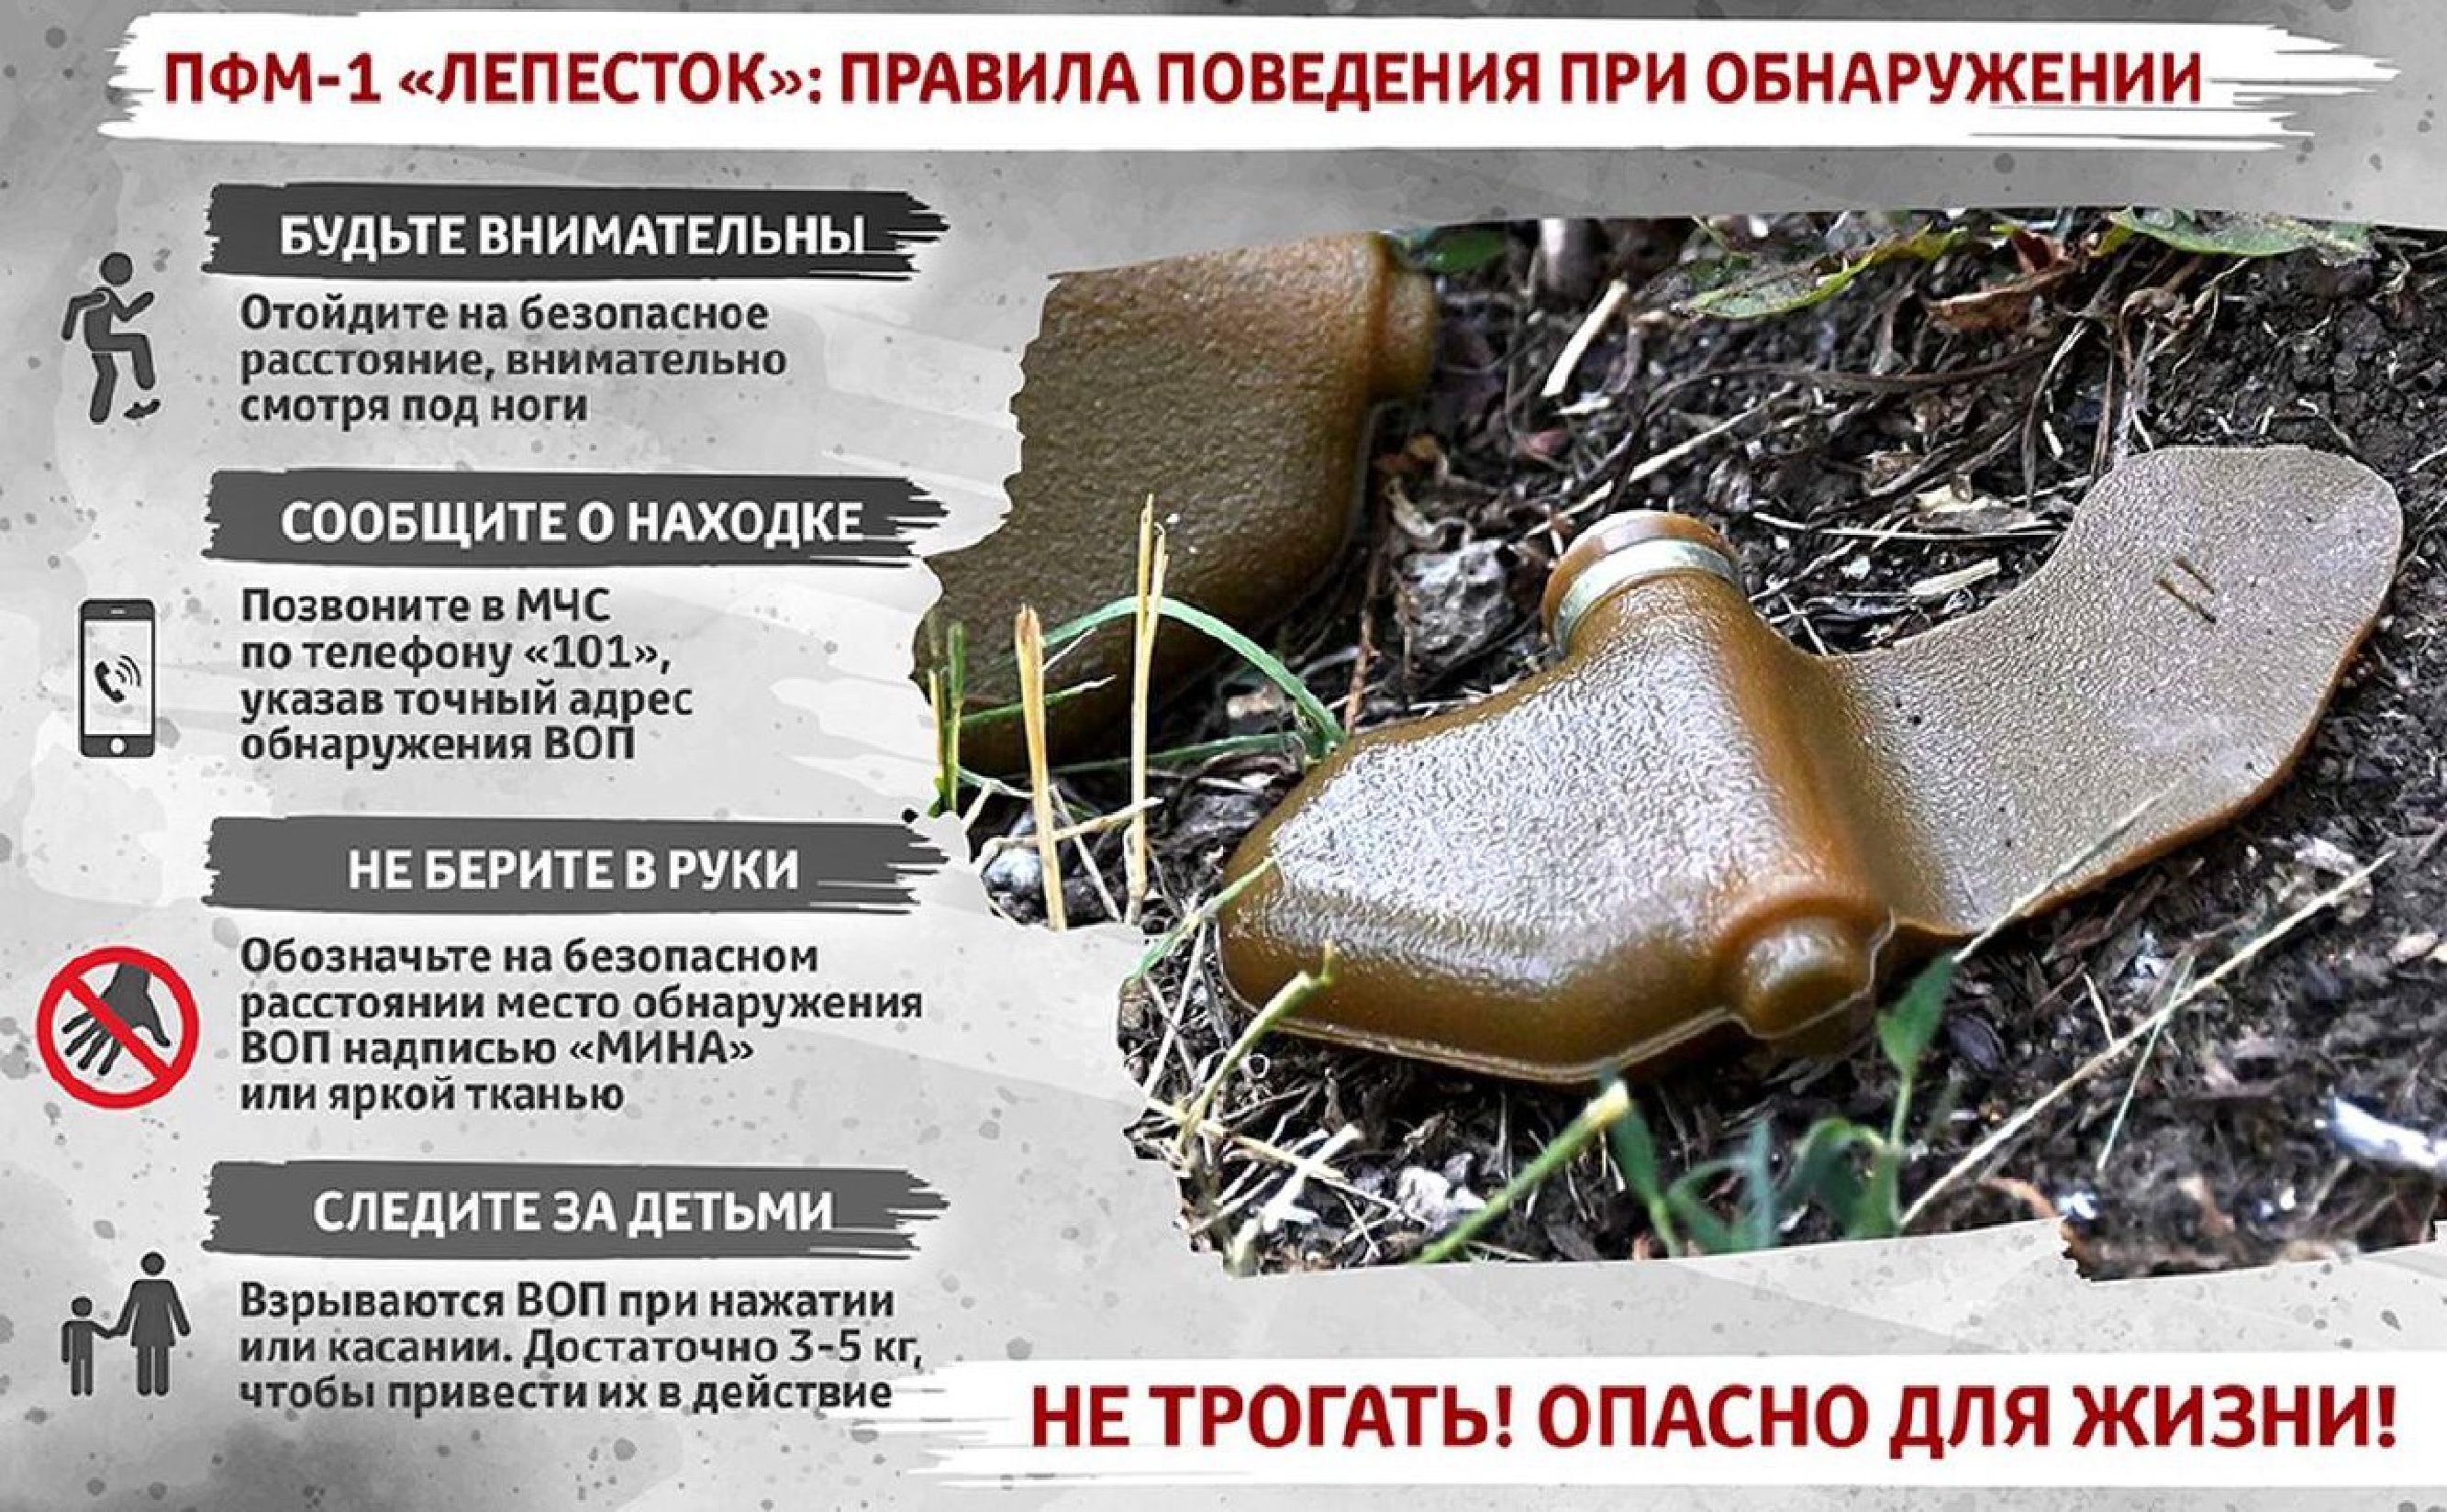 Памятка: Правила поведения при обнаружении мины ПФМ-1 "Лепесток"